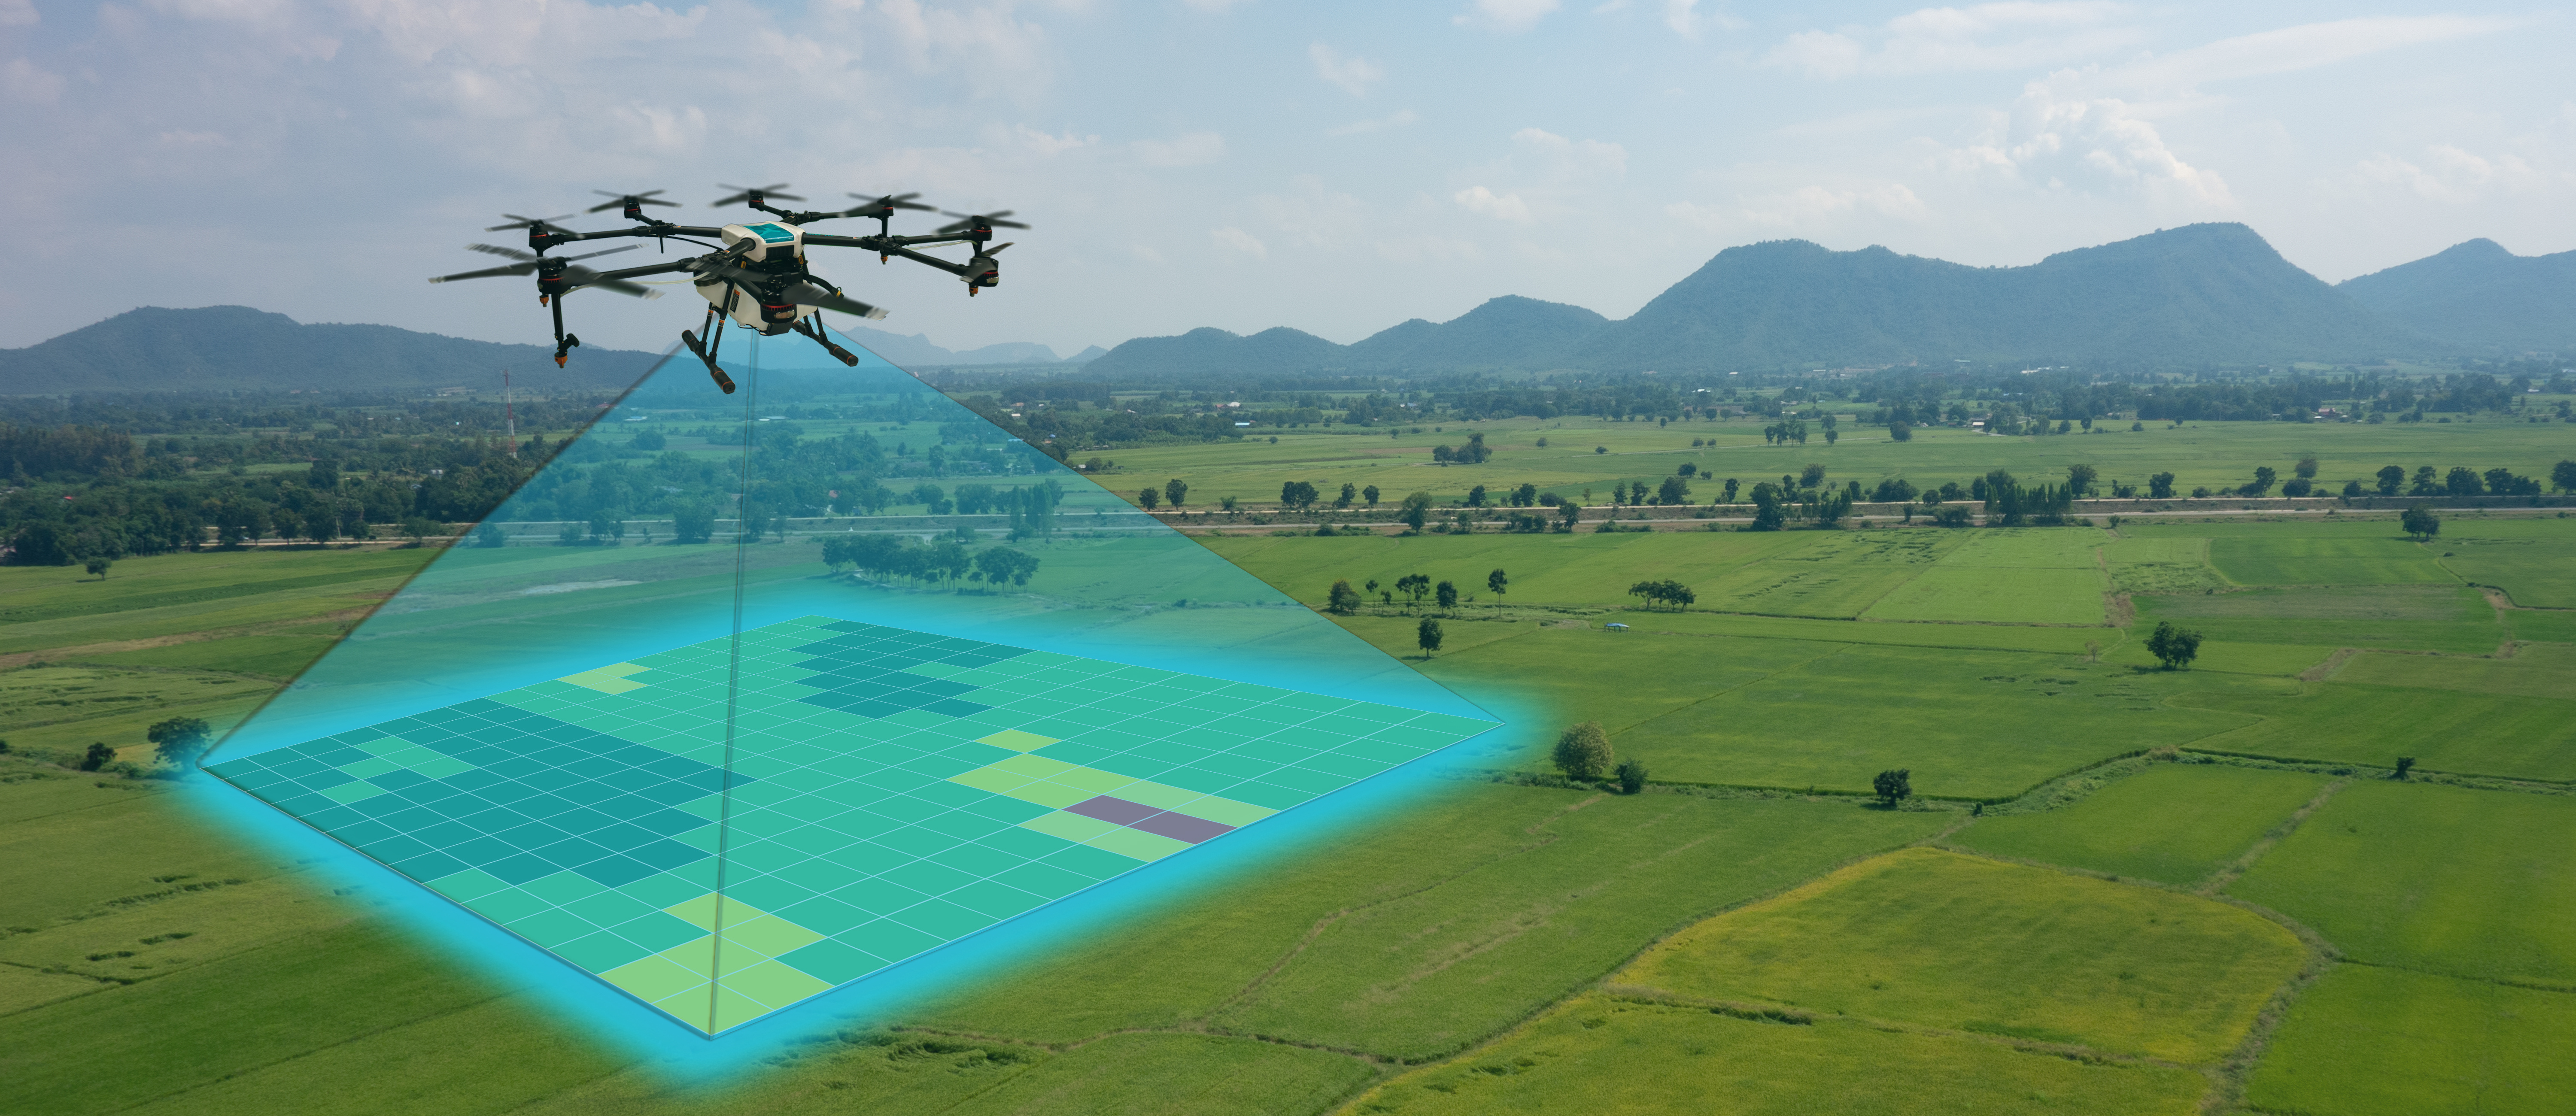 Les drones sont un outil robotique déjà adopté par le secteur agricole. © Monopoly919, Adobe Stock